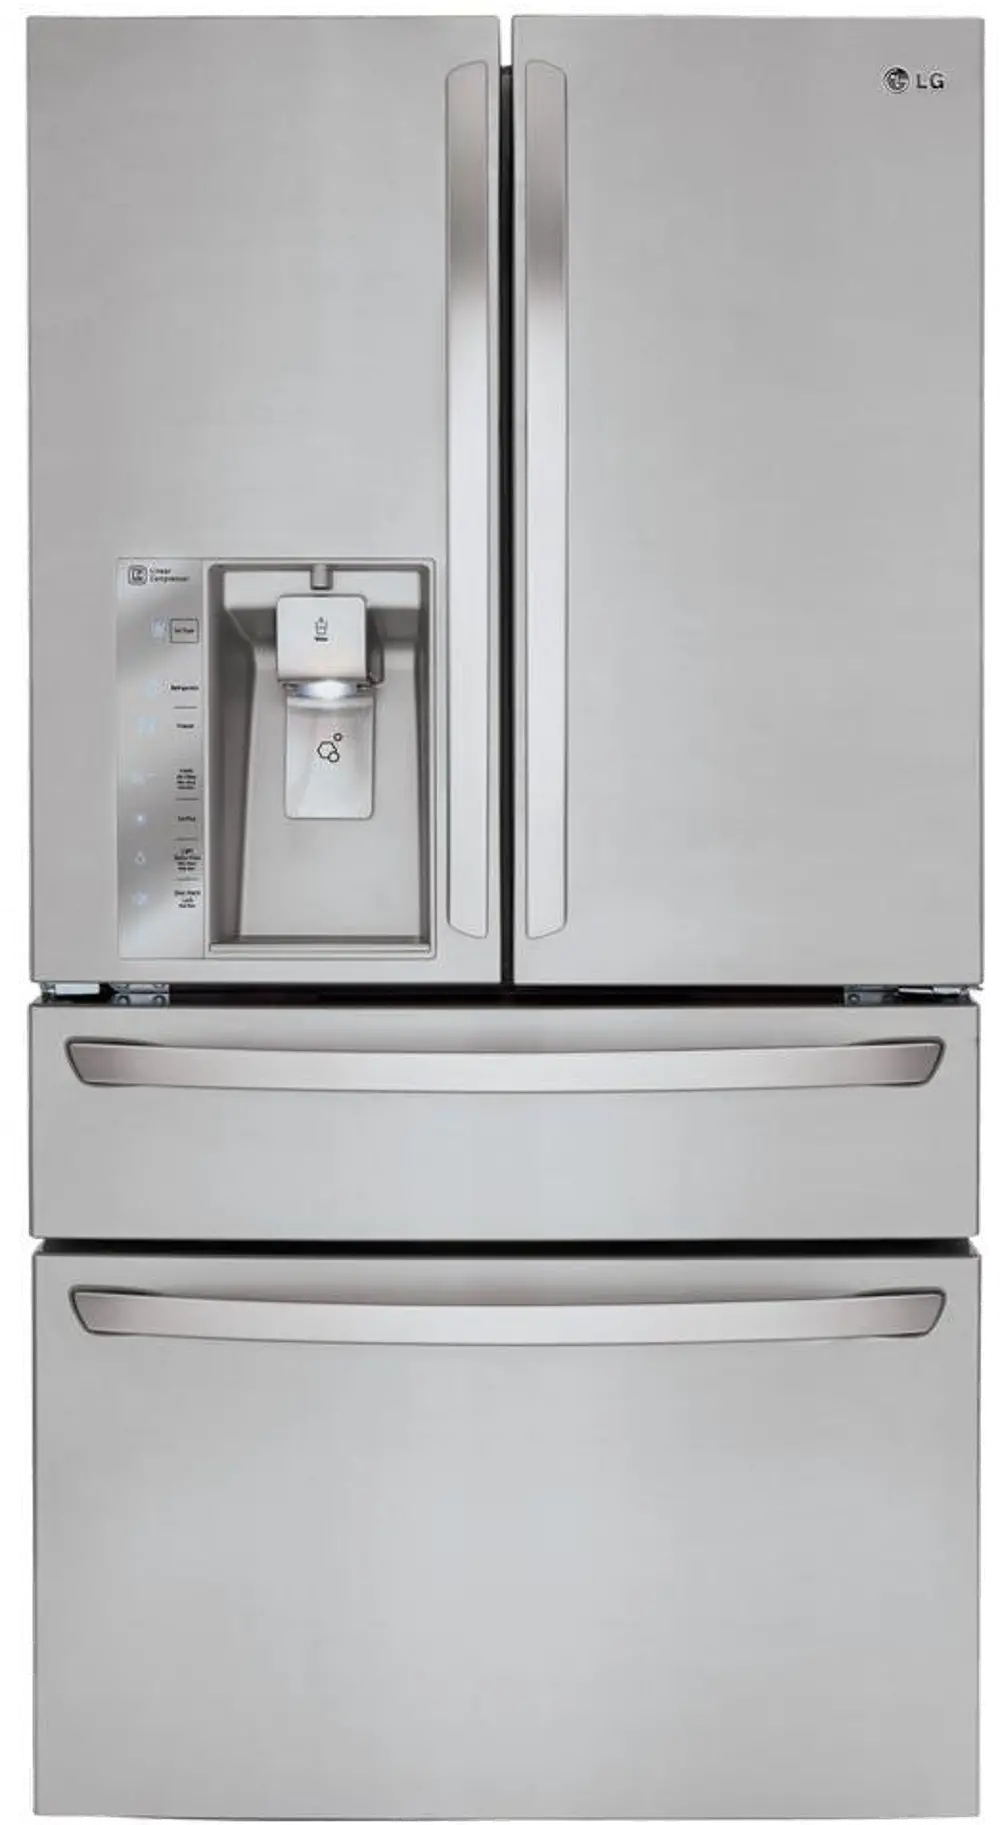 LMXC23746S LG Counter Depth 4 Door French Door Refrigerator - 22.7 cu. ft., 36 Inch Stainless Steel-1